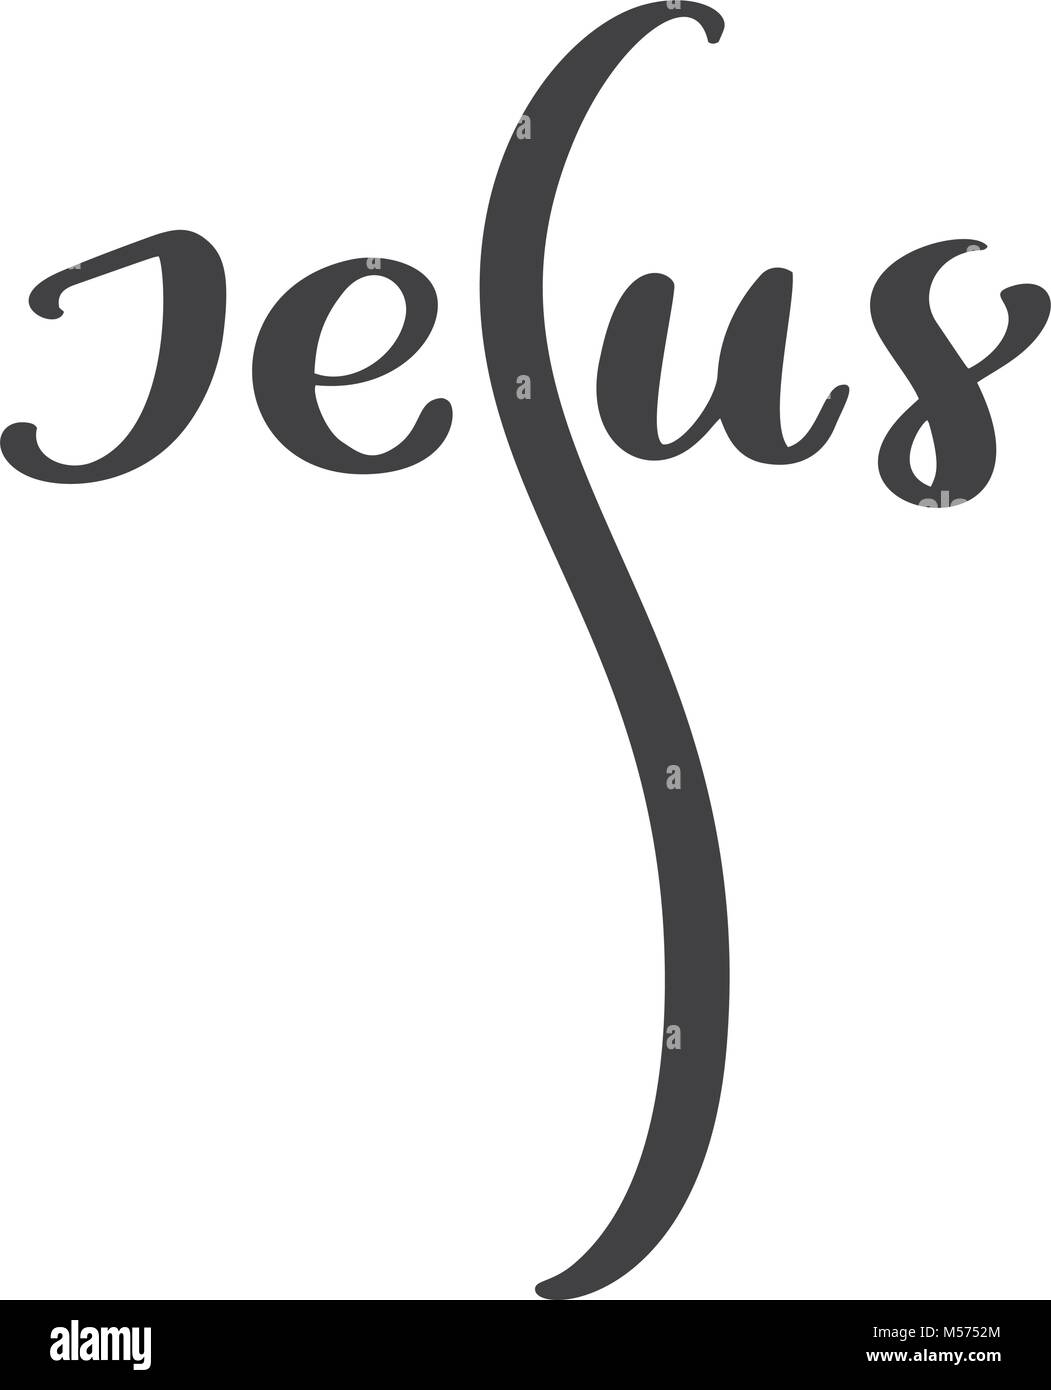 Disegnata a mano Gesù caratteri di testo testo forma a croce sullo sfondo bianco. Calligraphy lettering illustrazione vettoriale Illustrazione Vettoriale